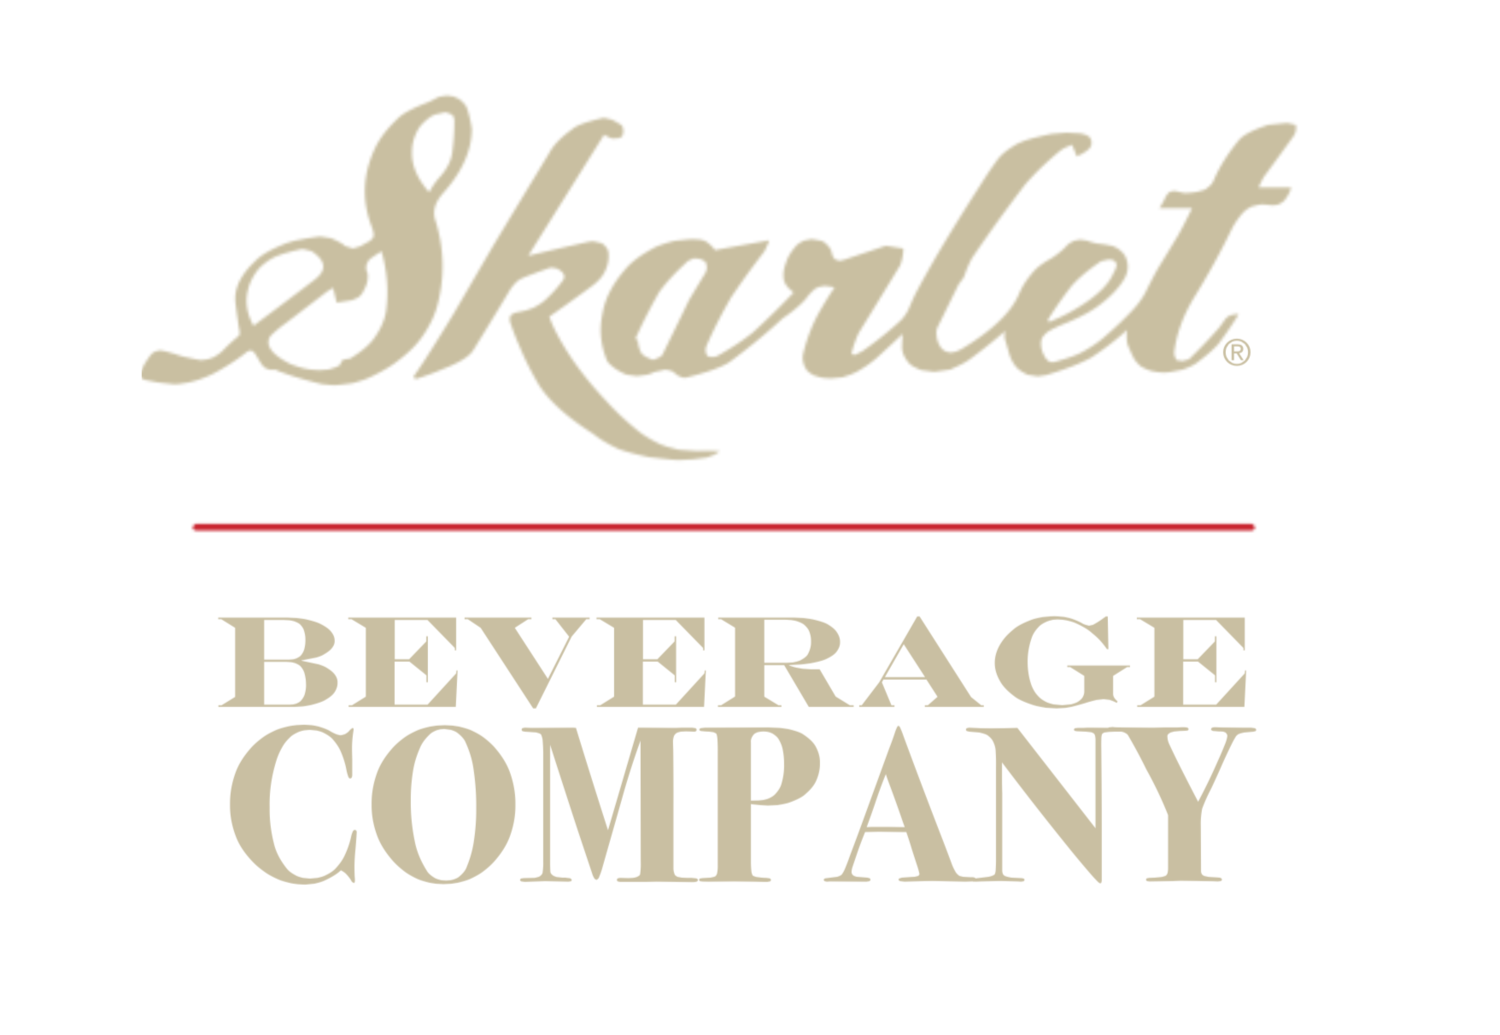 The Skarlet Beverage Co.